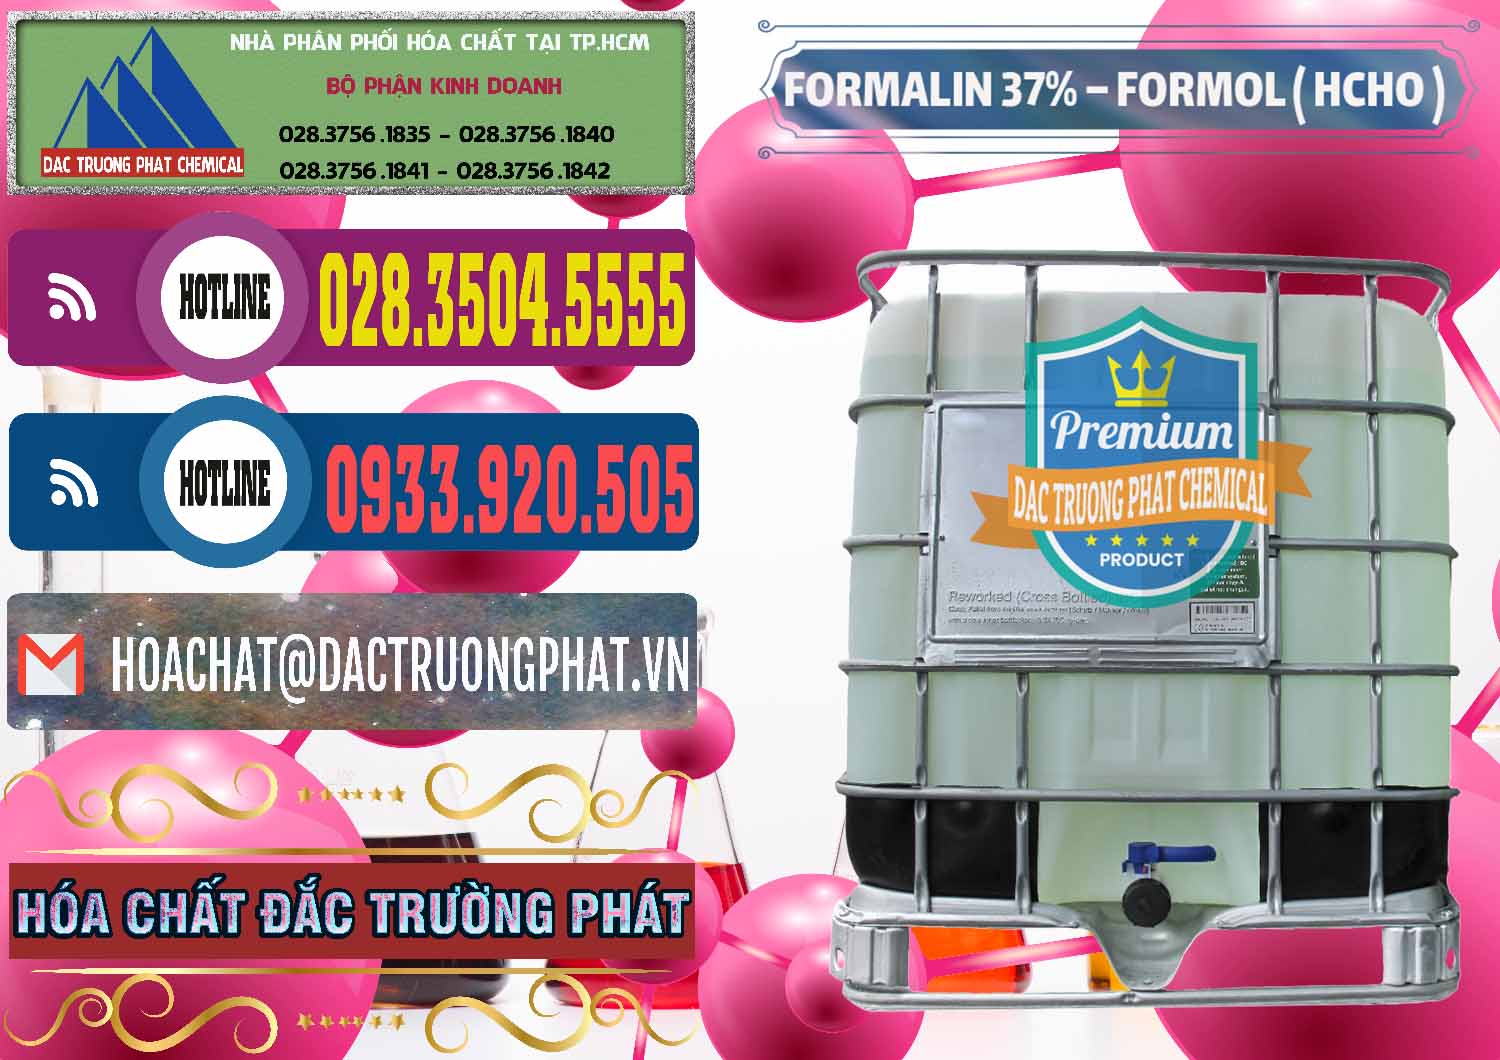 Cty chuyên bán & cung ứng Formalin - Formol ( HCHO ) 37% Việt Nam - 0187 - Đơn vị chuyên cung cấp - bán hóa chất tại TP.HCM - muabanhoachat.com.vn